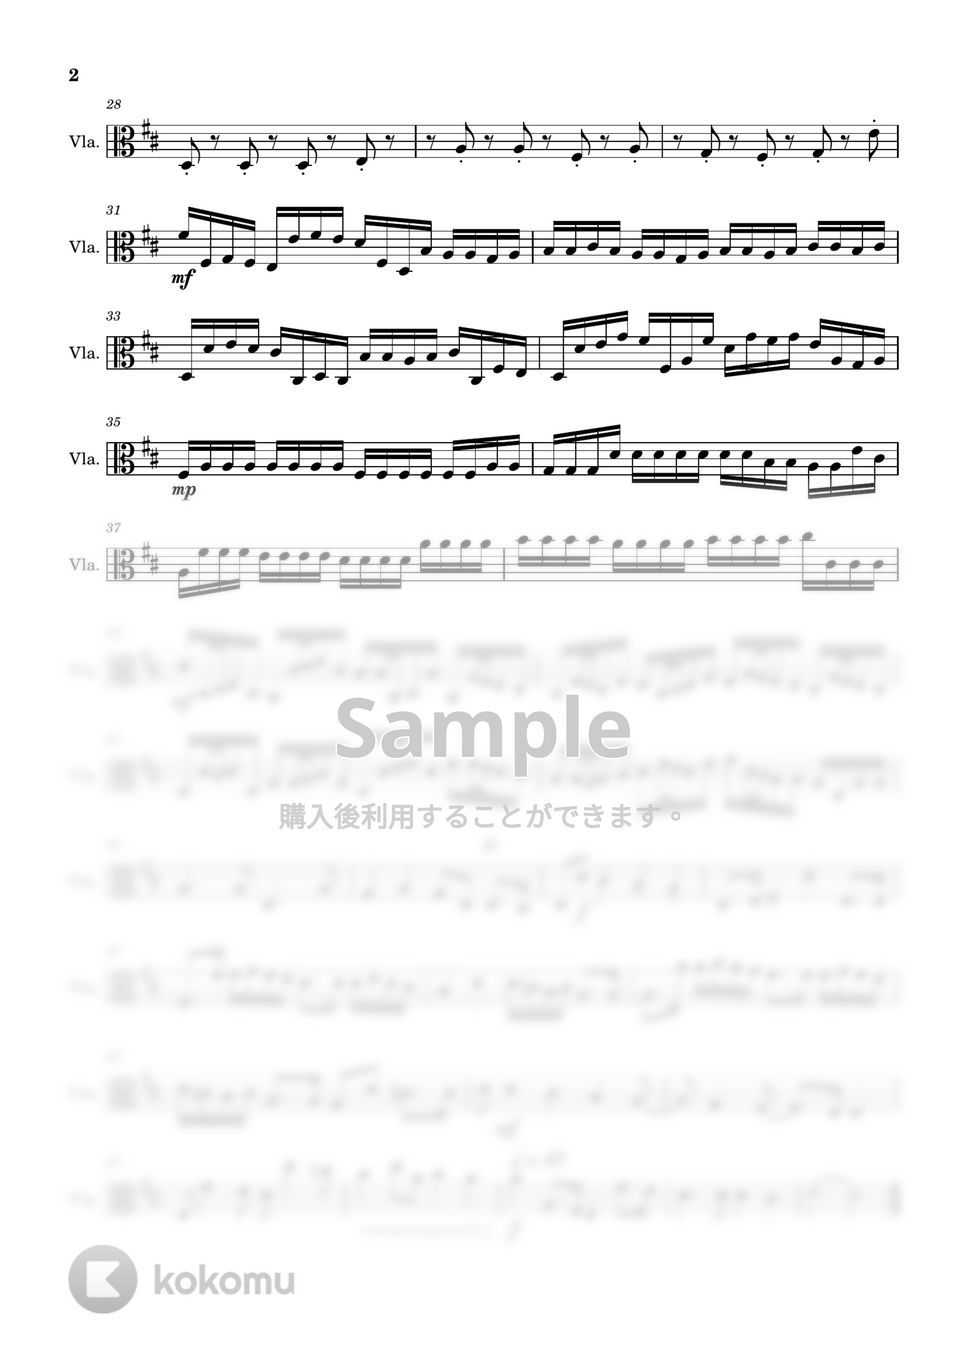 パッハルベル - カノン (ヴィオラ-弦楽四重奏) by Cellotto